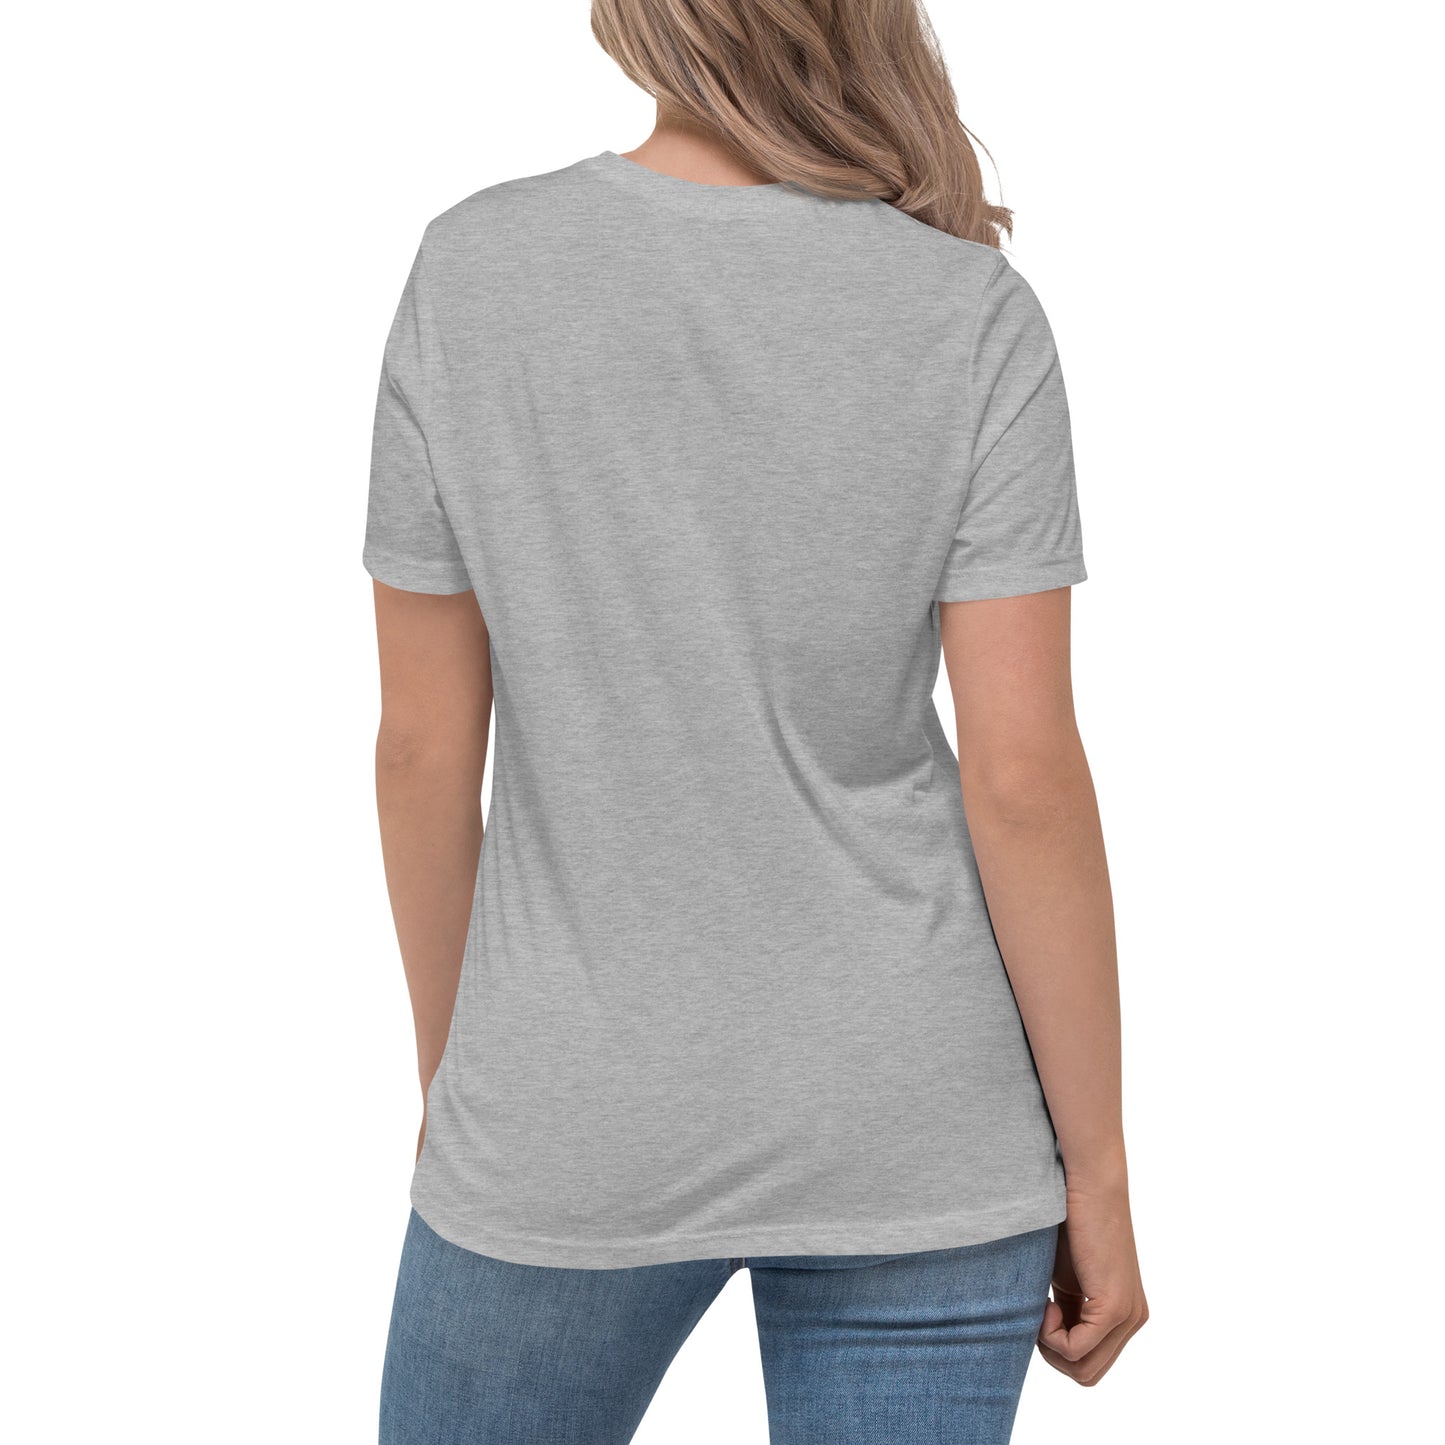 Growth Mindset Women's Relaxed T-Shirt